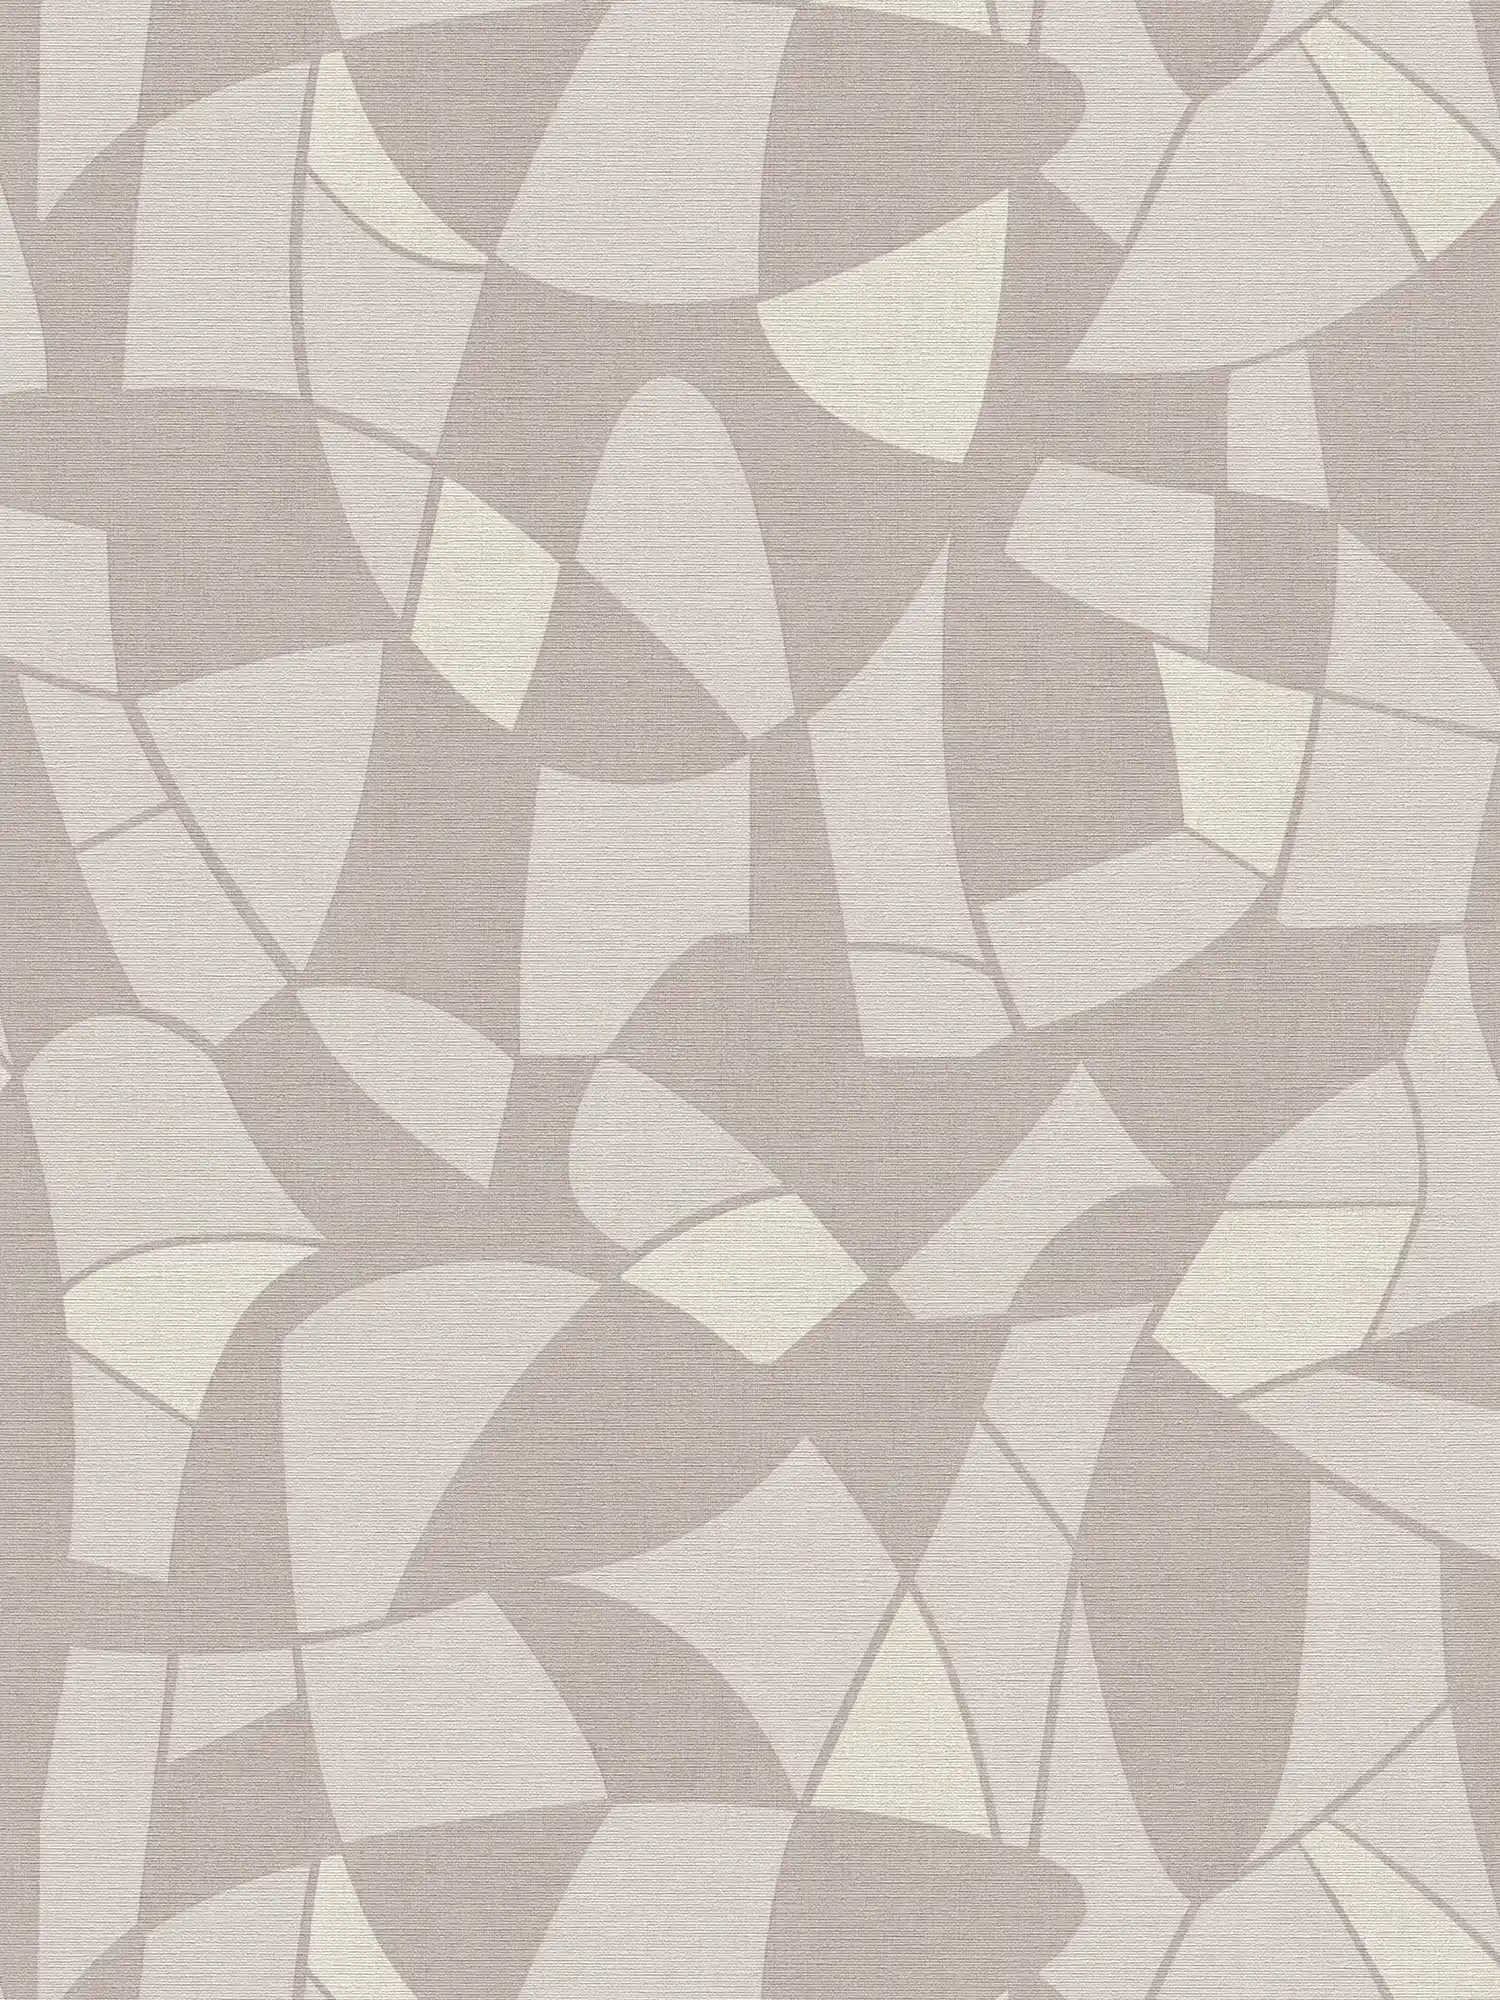         Vliestapete in dezenten Farben im abstrakten Muster – Grau, Creme
    